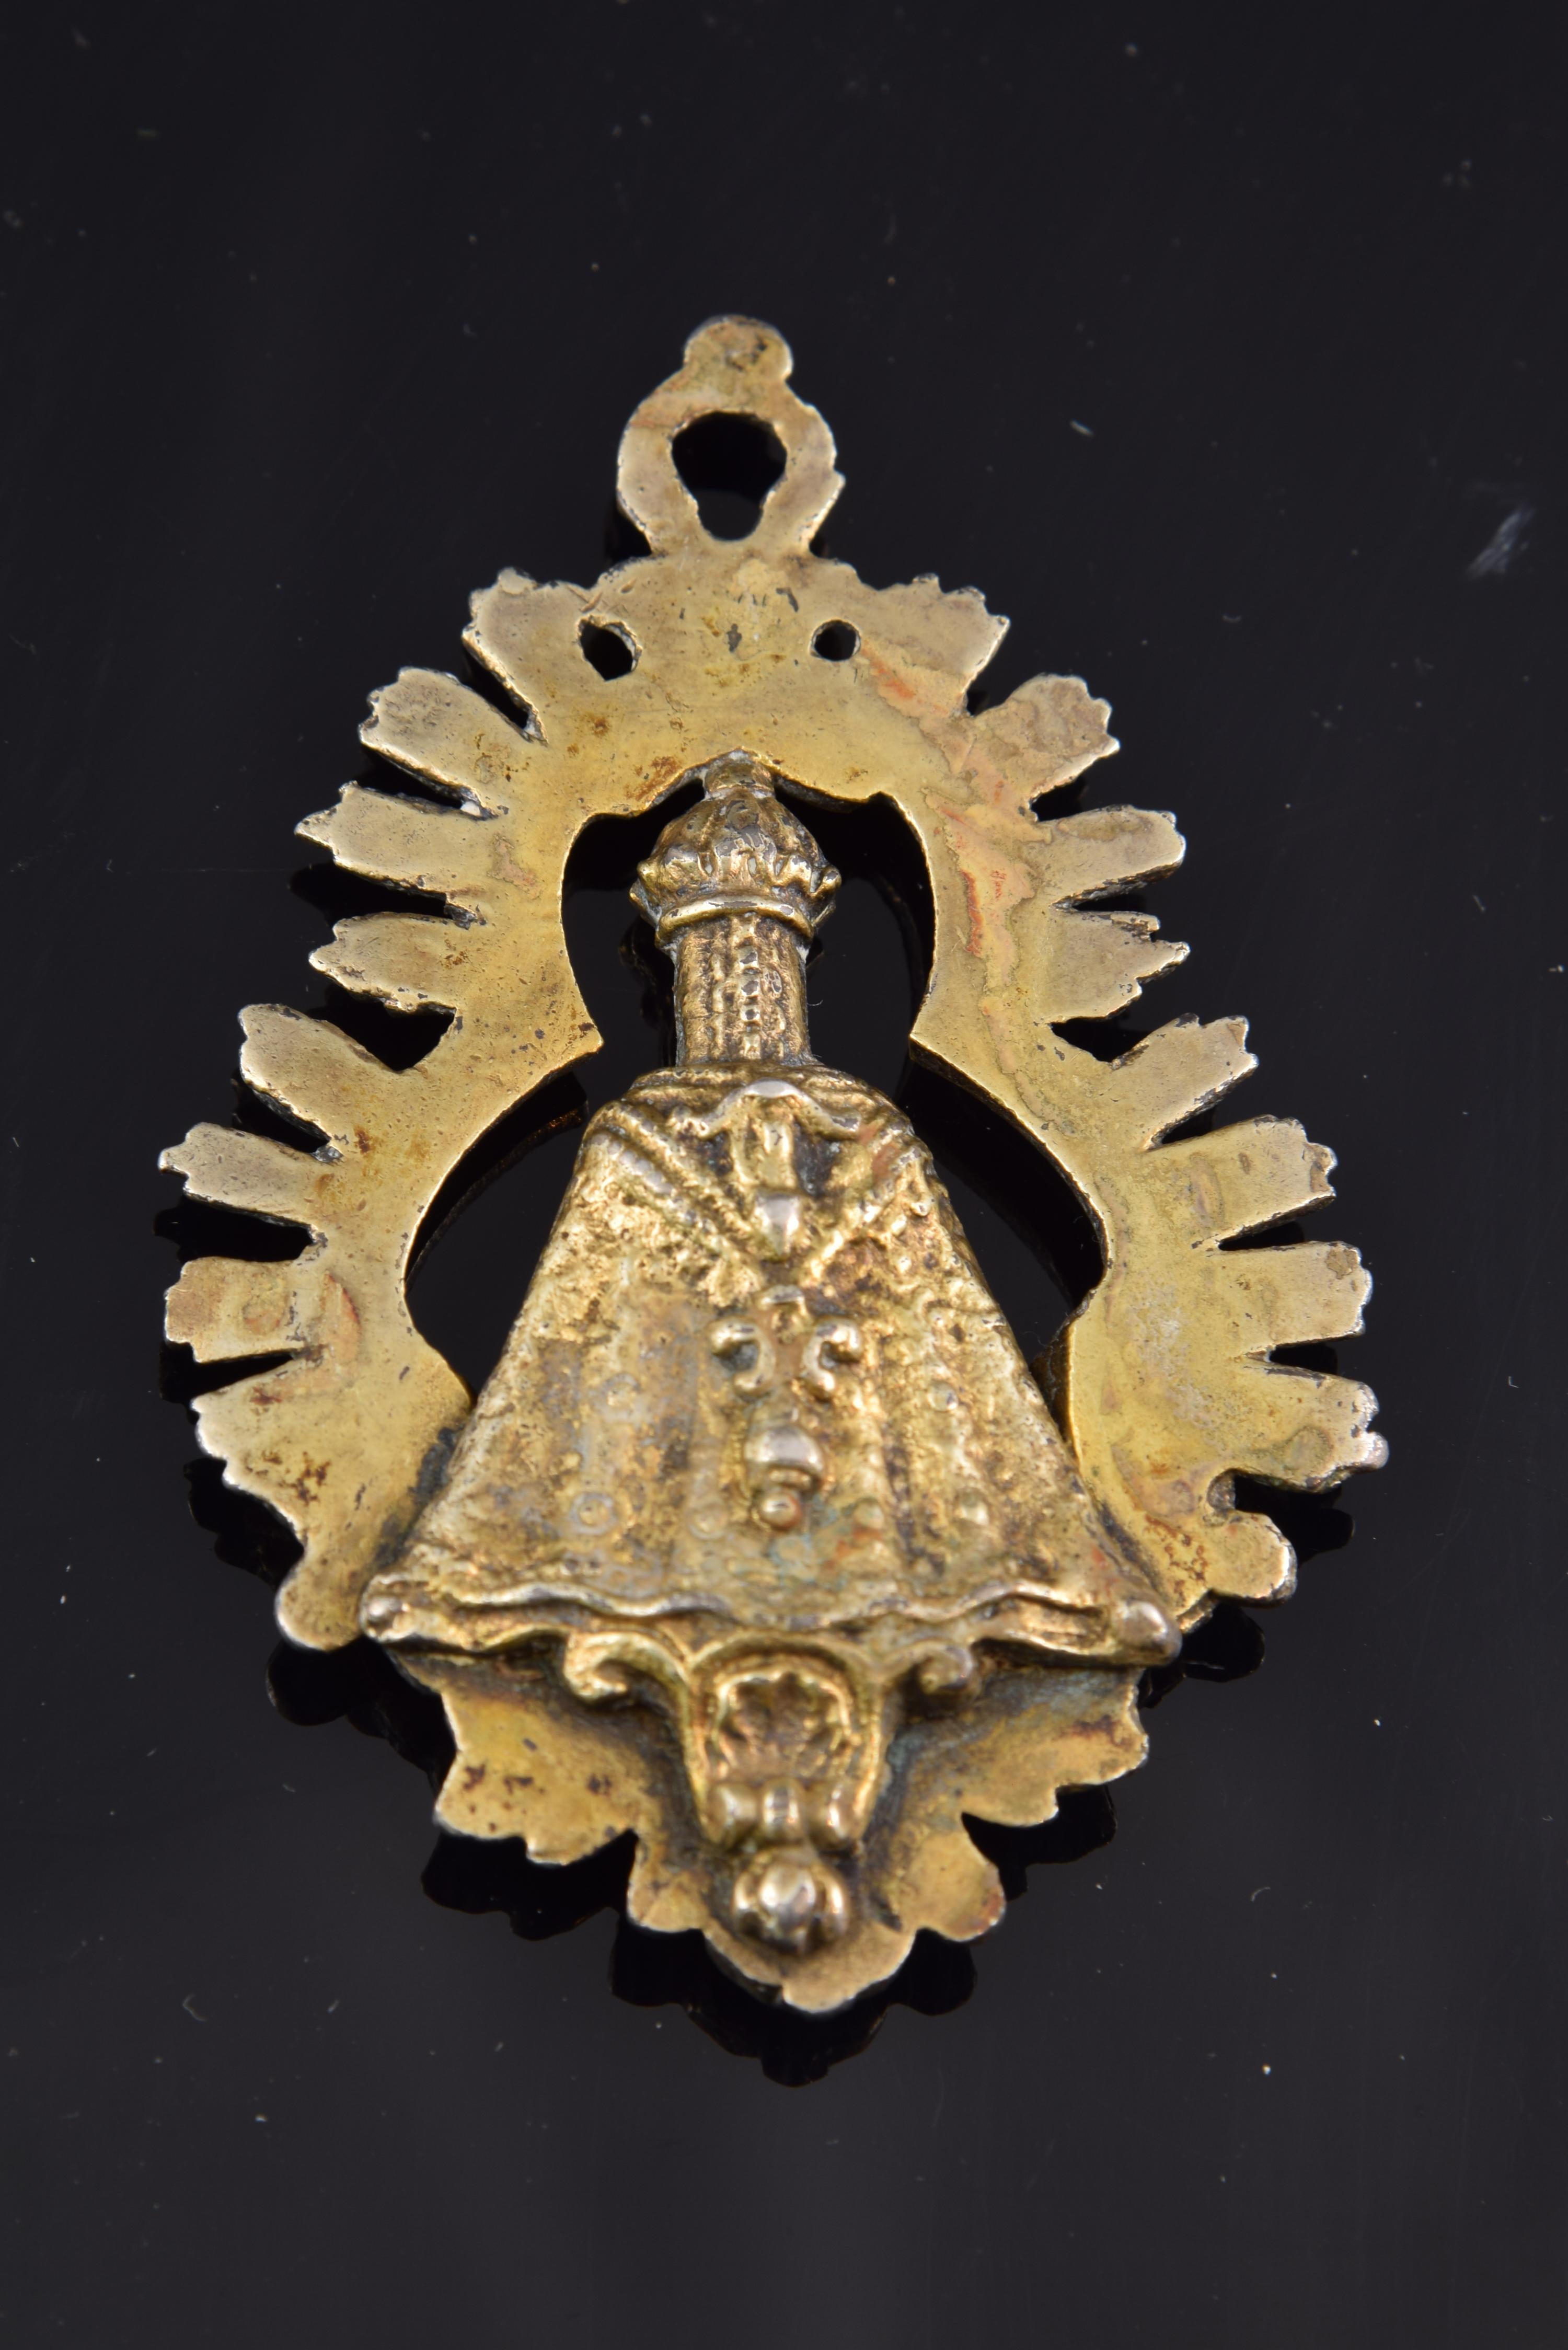 Médaille. Espagne, 18ème siècle.
 Médaille de dévotion en métal doré qui montre une image de la Vierge Marie, placée sur un piédestal et entourée d'une auréole trilobée rayonnante. Vers le bas, vous pouvez voir des têtes d'anges ailés, et notez que